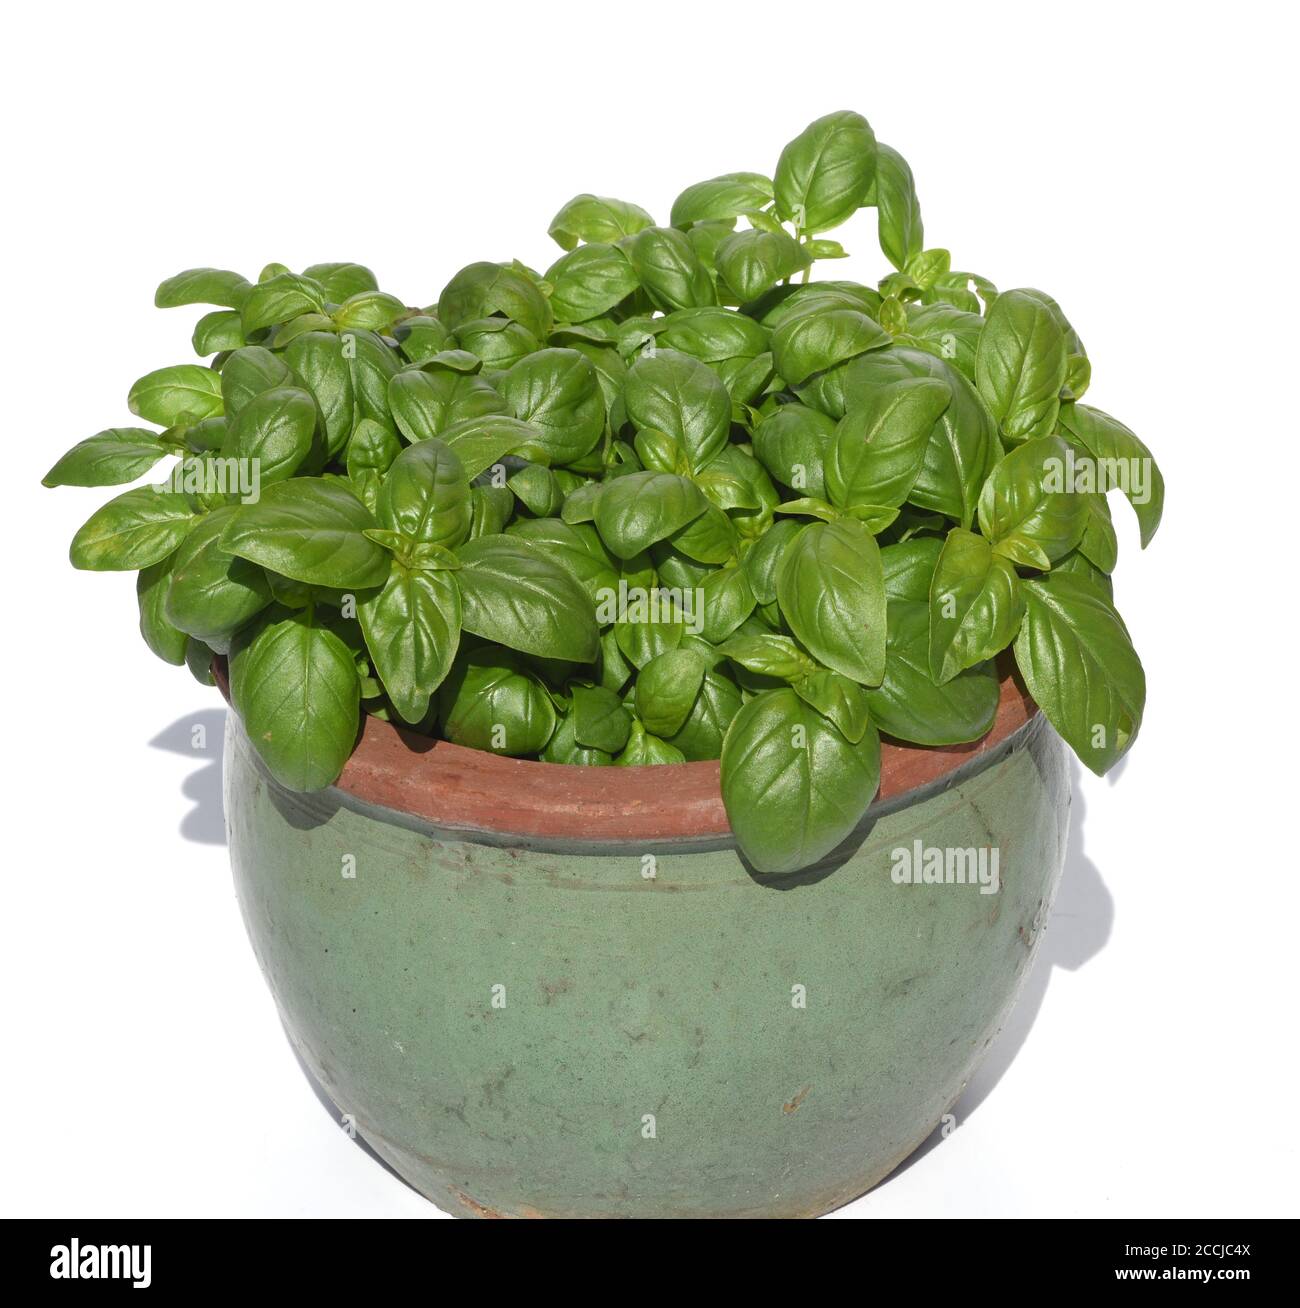 Basilikum, Ocimum basilicum, ist eine Heilpflanze und Kuechengewuerz mit gruenen Blaettern. Basil, Ocimum basilicum, is a medicinal plant and kitchen Stock Photo